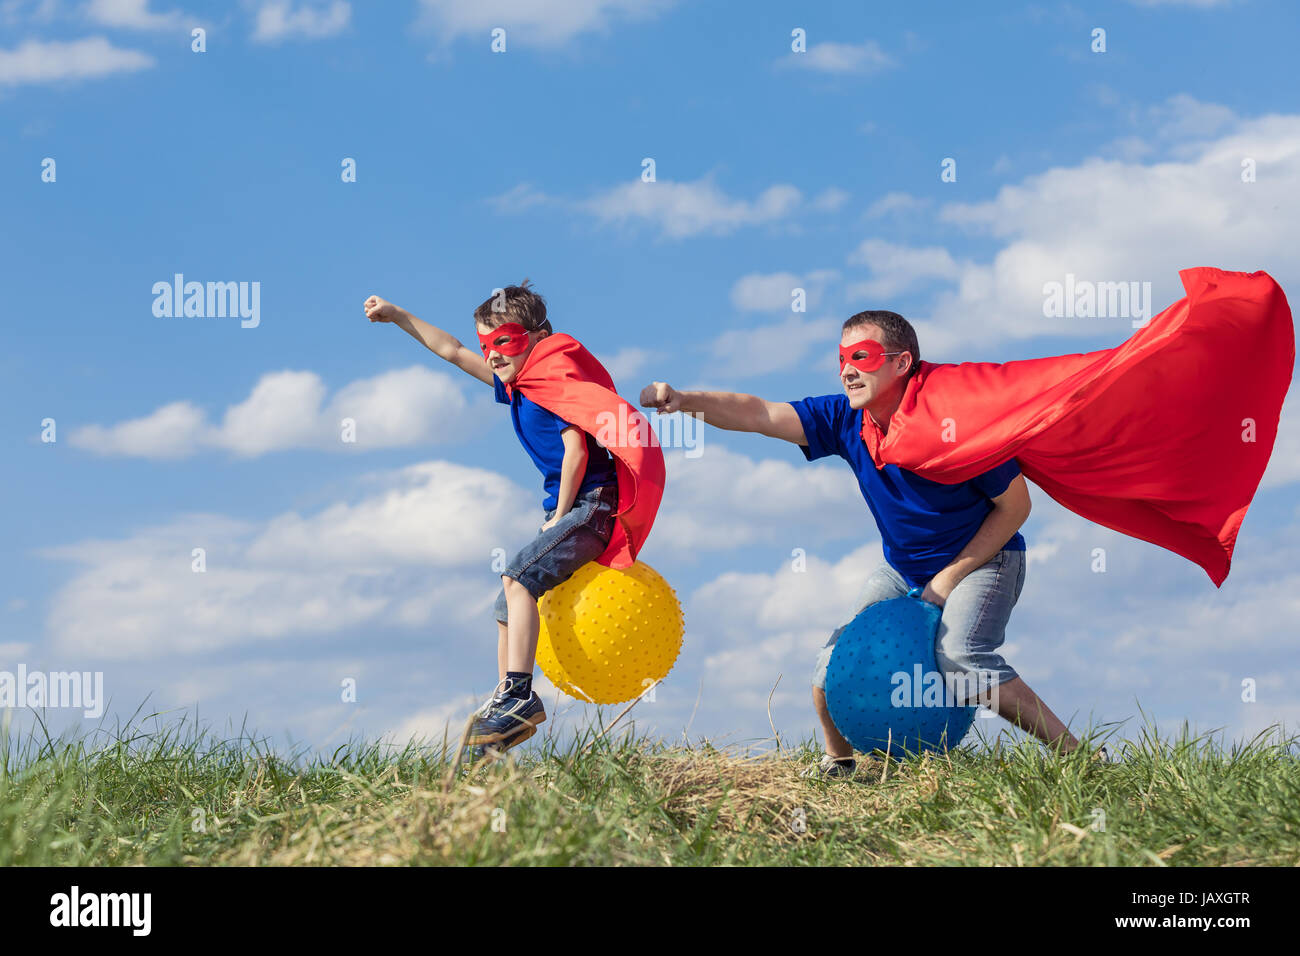 Vater und Sohn spielen Superhelden in der Tageszeit. Leute, die Spaß im Freien. Sie springen auf aufblasbaren Bällen auf dem Rasen. Konzept der freundlichen Familie. Stockfoto